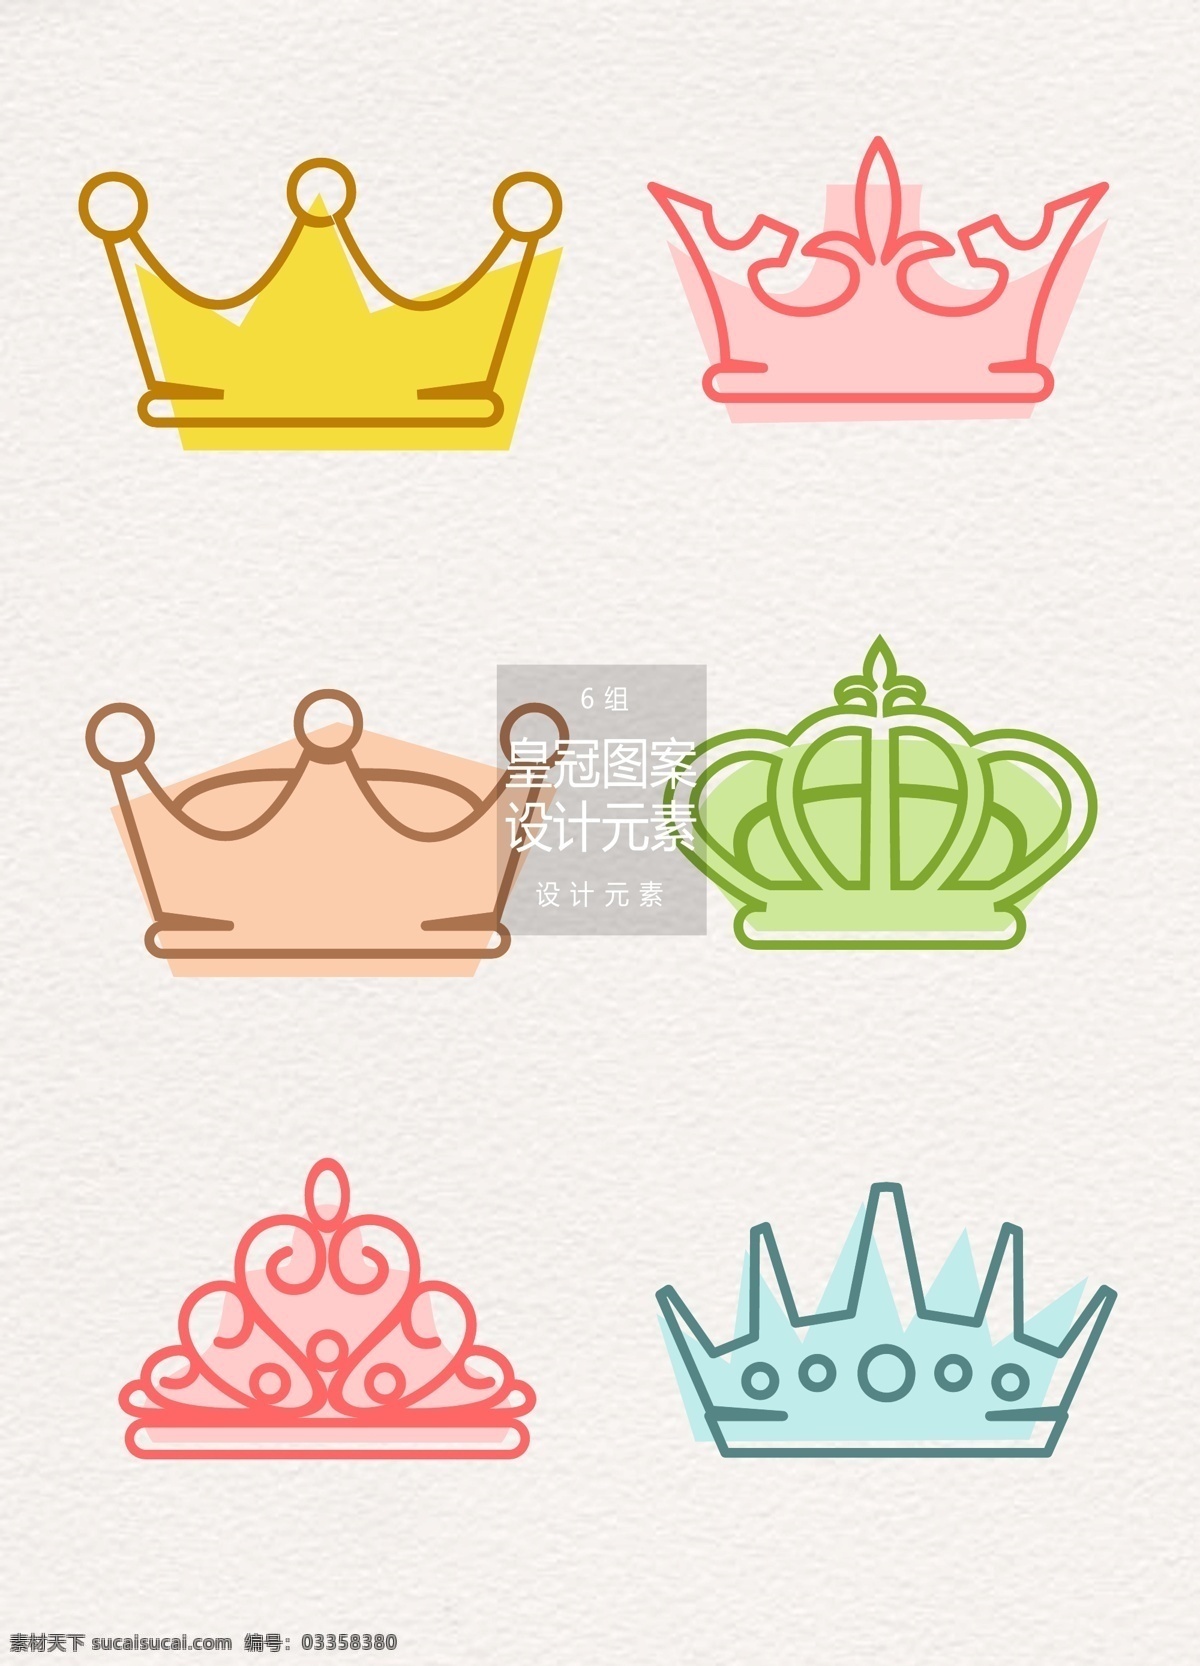 创意 手绘 皇冠 图案 元素 设计元素 手绘图案 公主 王子 手绘皇冠 皇冠图案